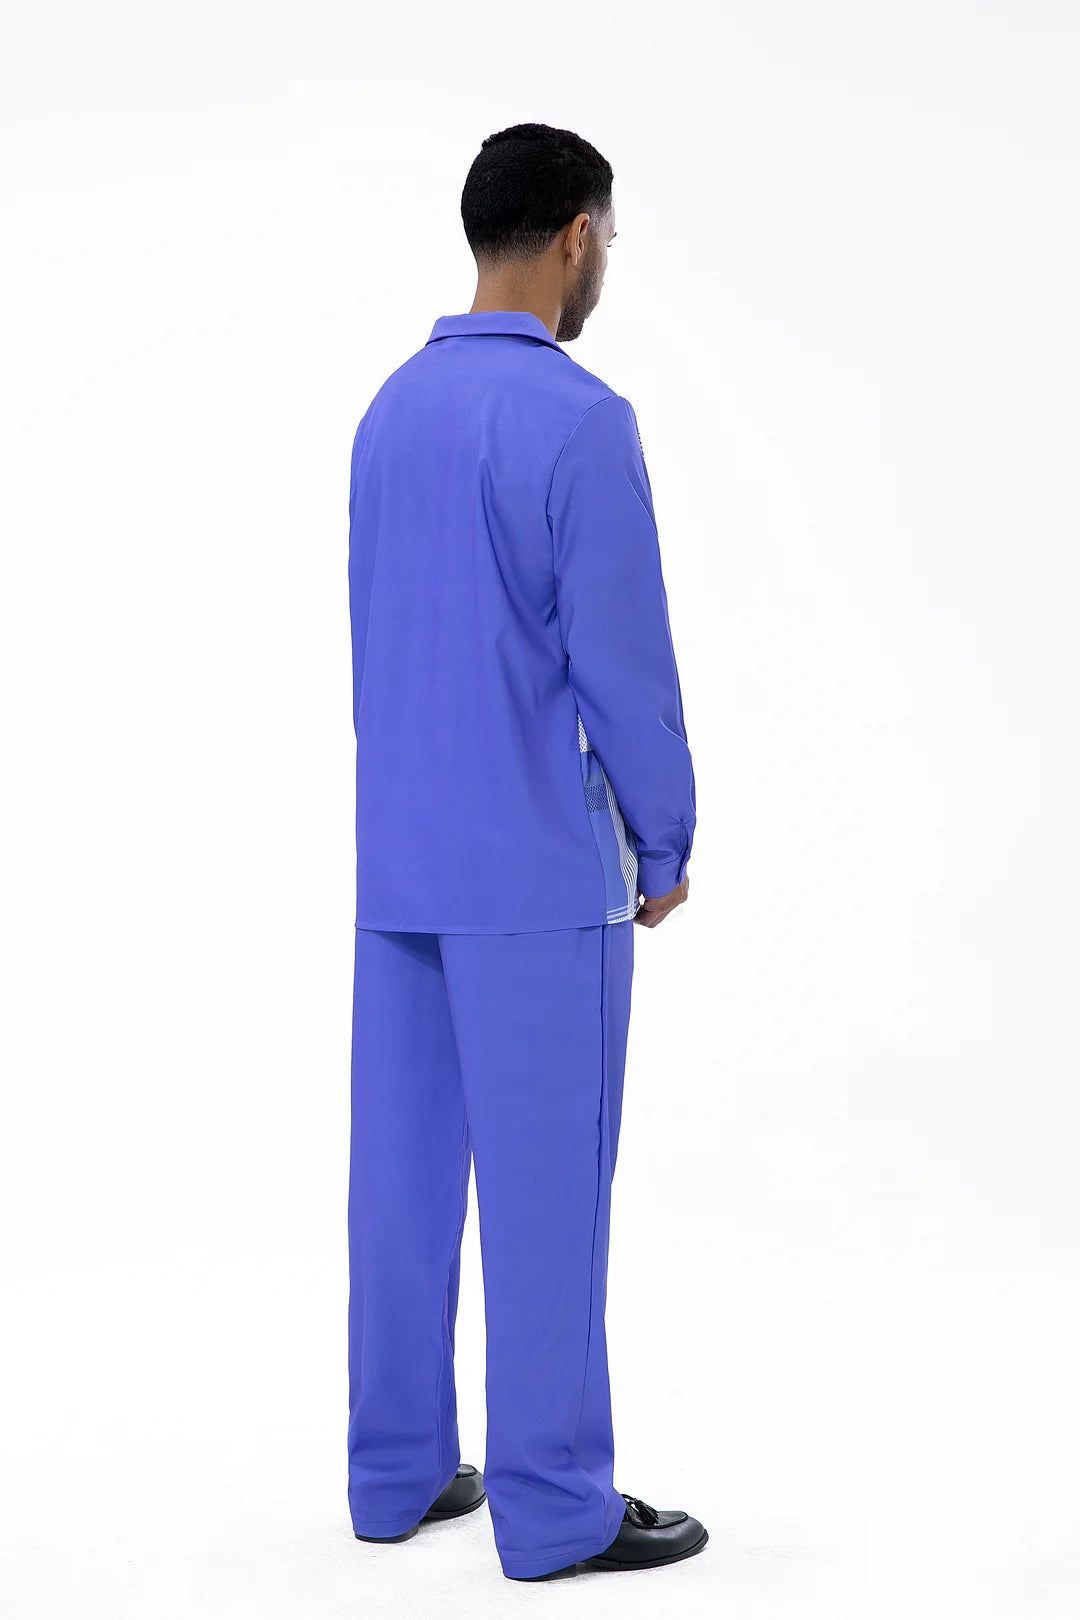 Purple Long Sleeve Trouser Line Two-Piece Walking Suit